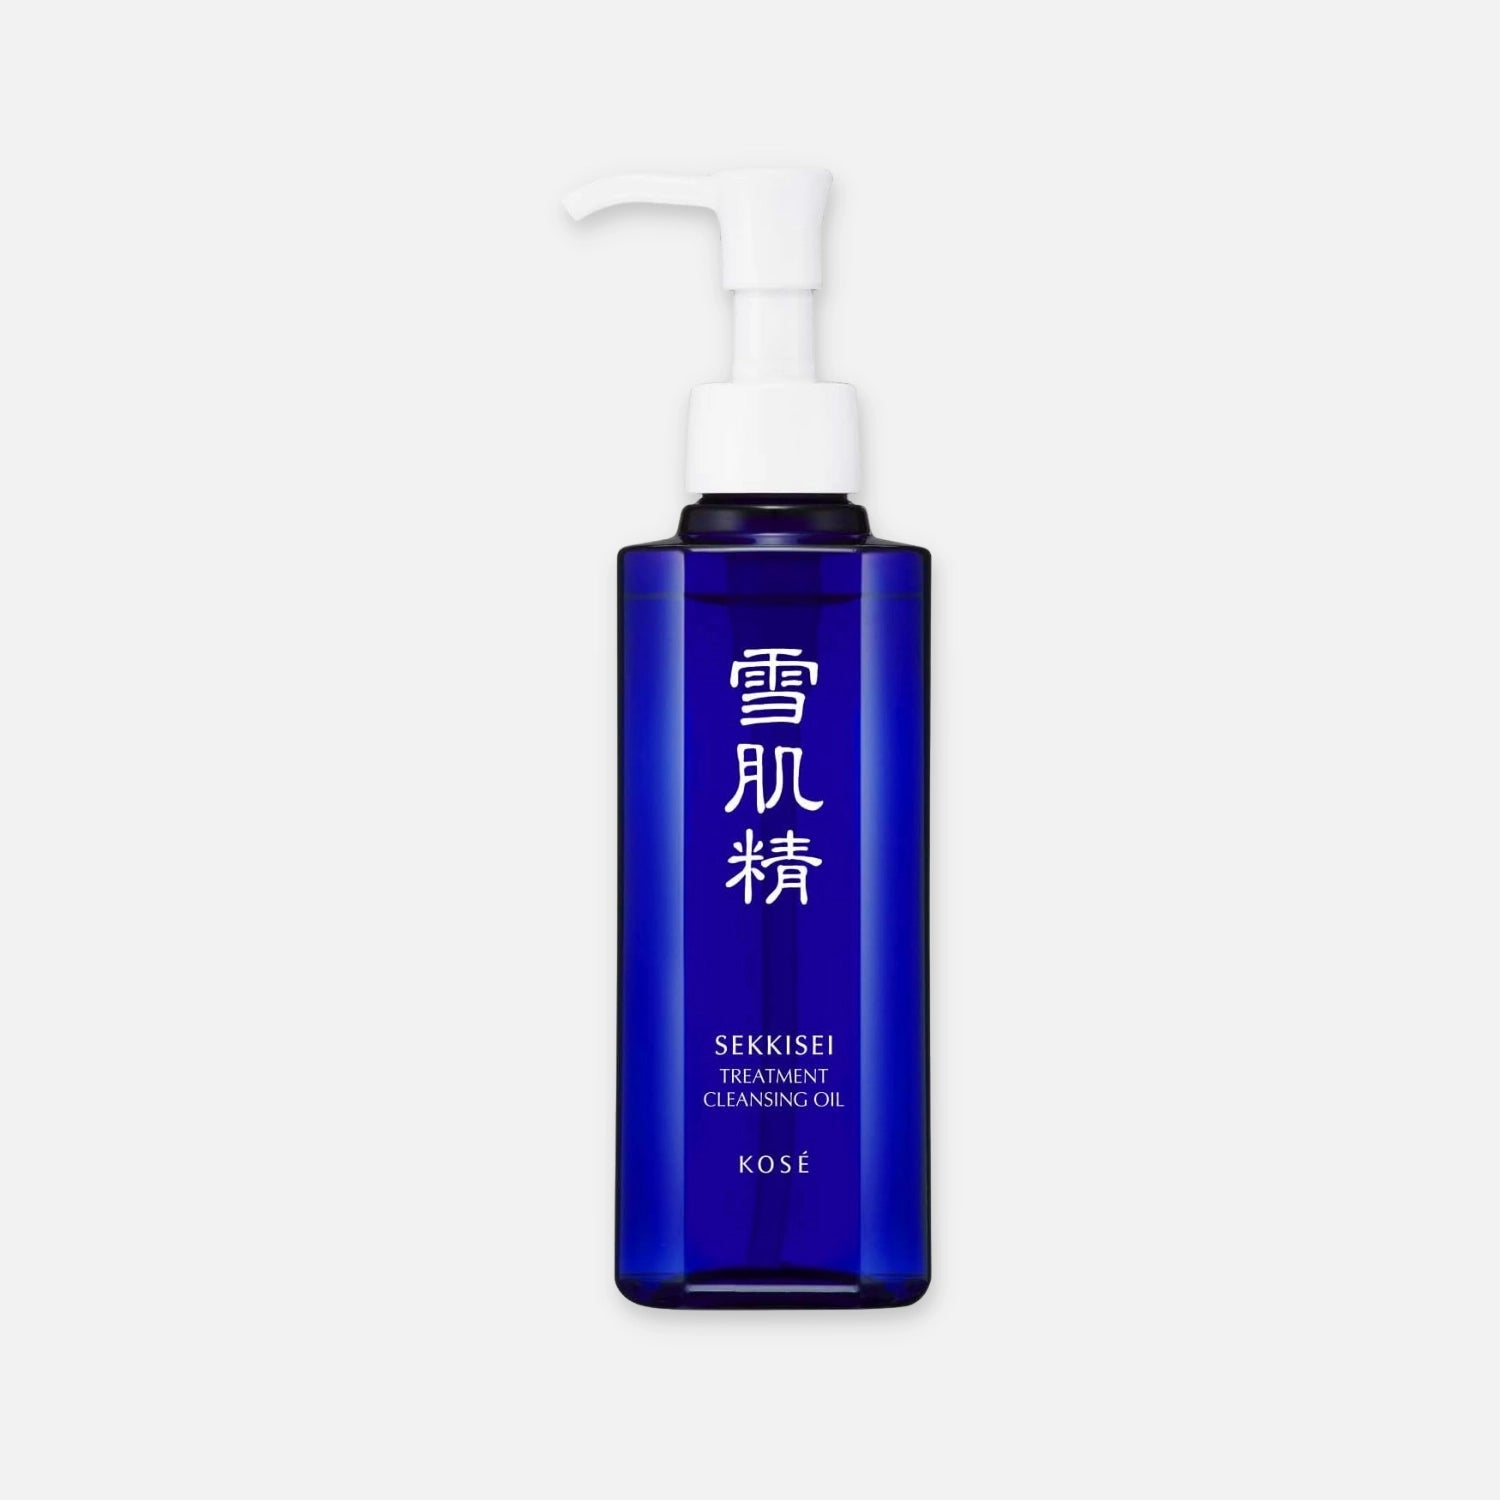 Kose Sekkisei Treatment Cleansing Oil 160ml/300ml - Buy Me Japan